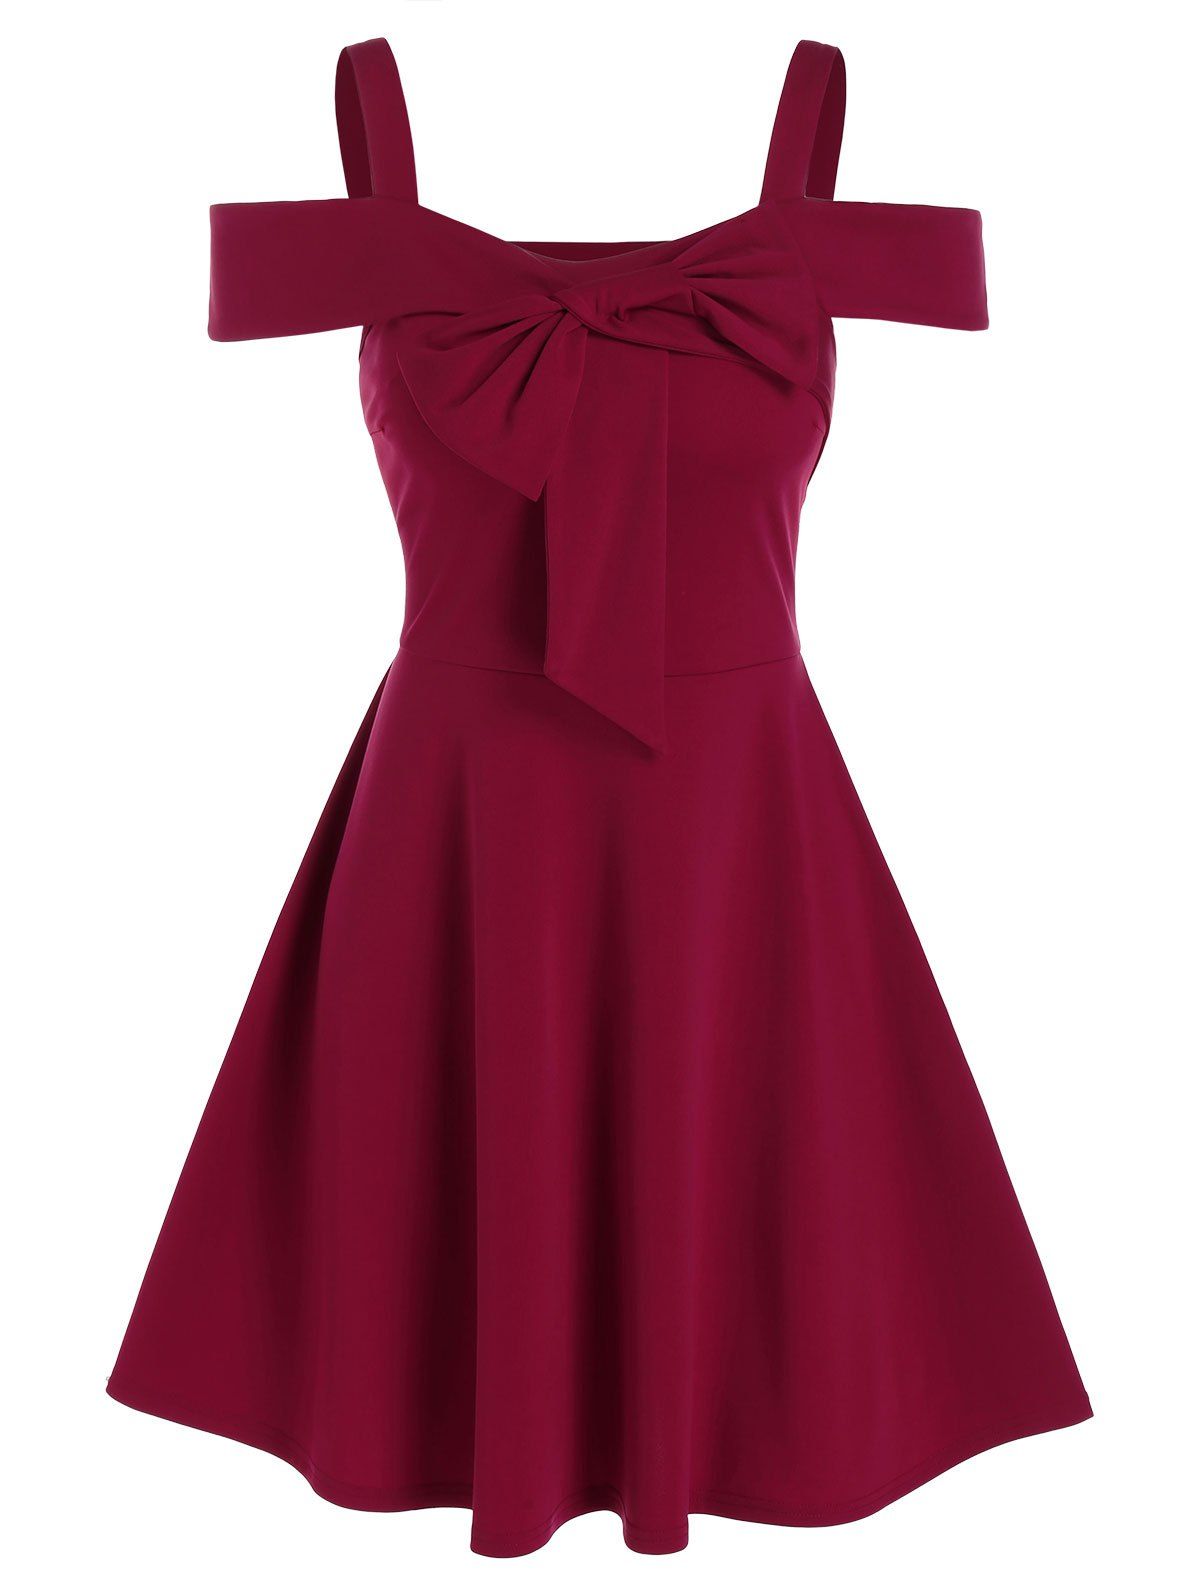 Cold Shoulder Bowknot Detail Vintage Dress - RED WINE XL